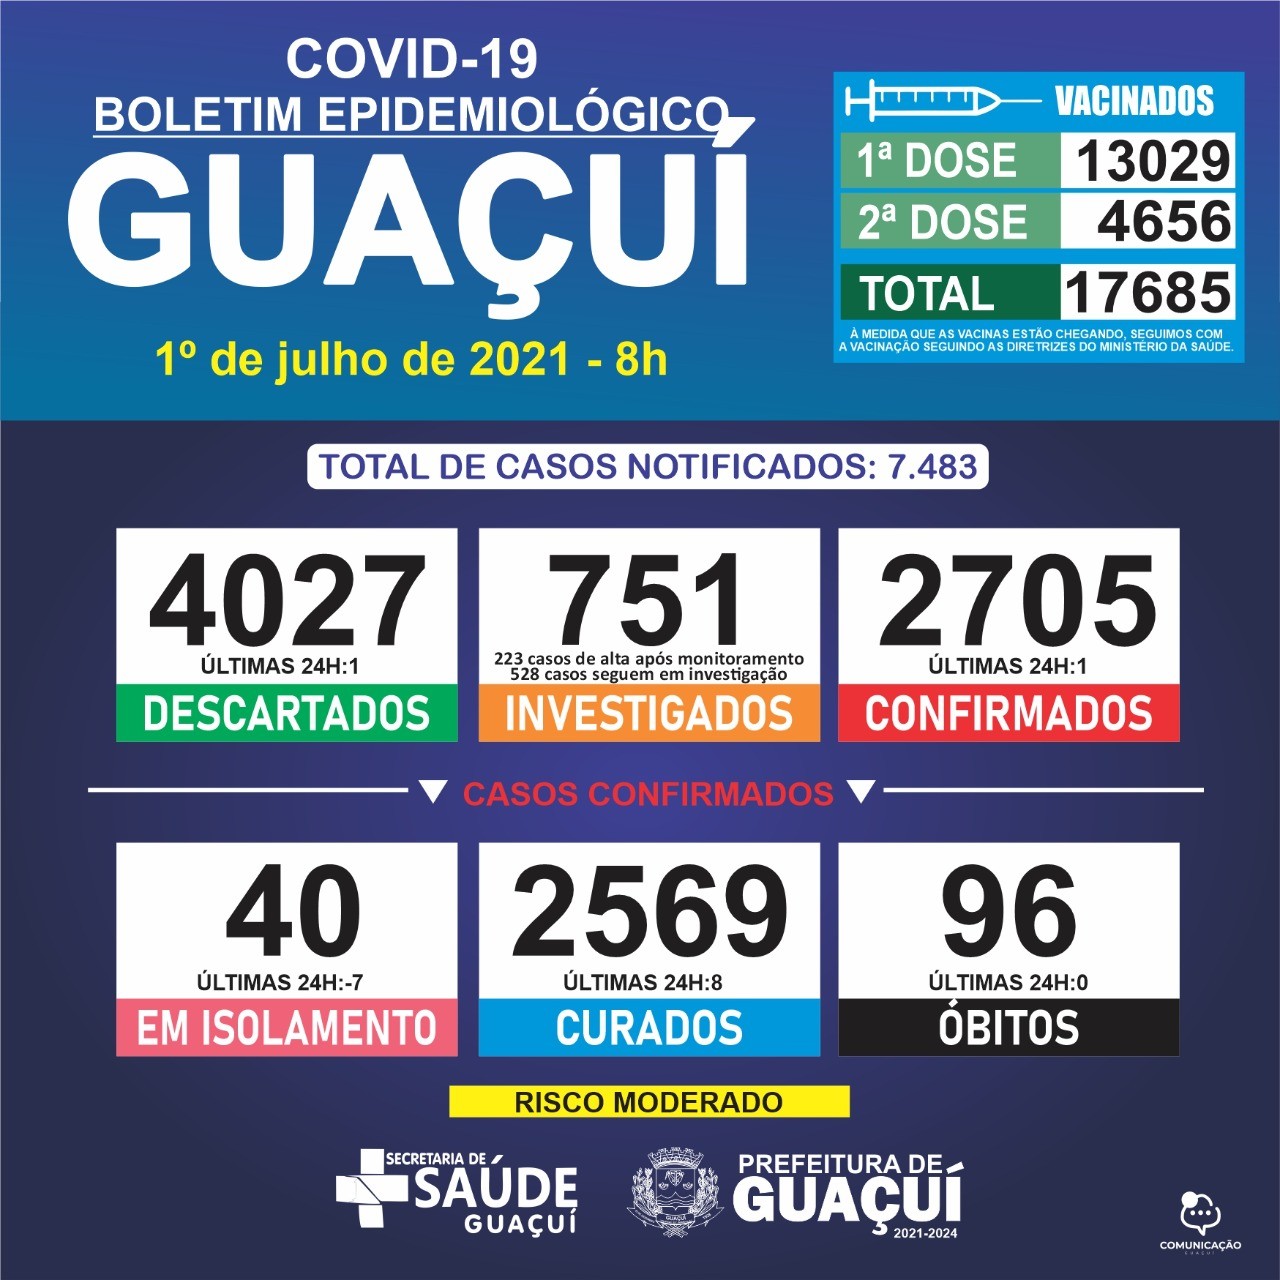 Boletim Epidemiológico 01/07/21: Guaçuí registra 1 caso confirmado e 8 curados nas últimas 24 horas